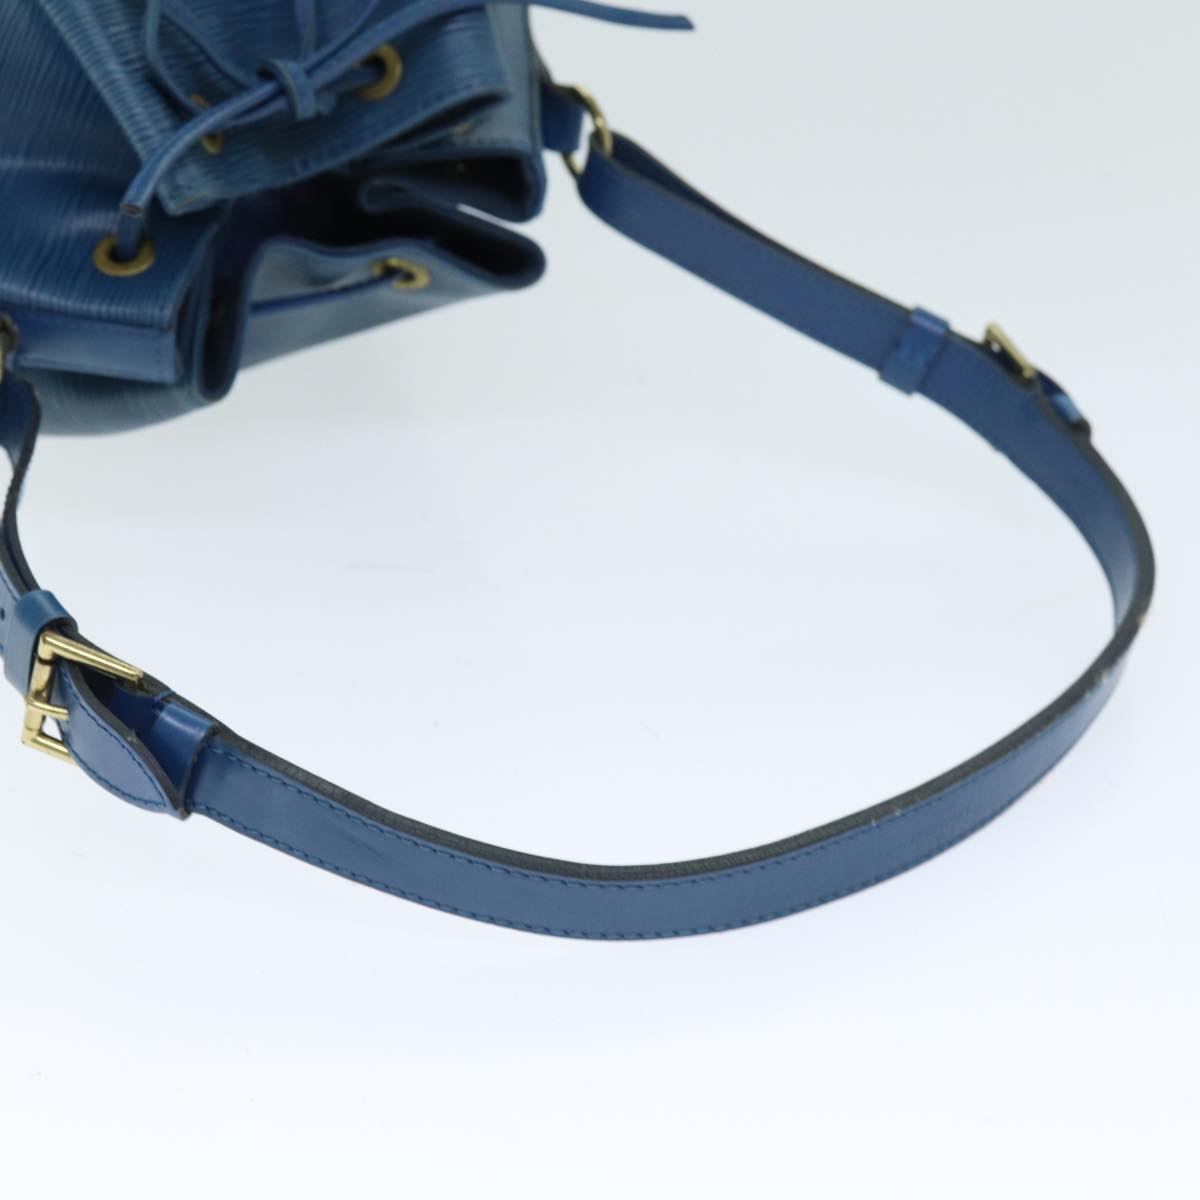 LOUIS VUITTON Epi Noe Shoulder Bag Toledo Blue M44005 LV Auth 74375